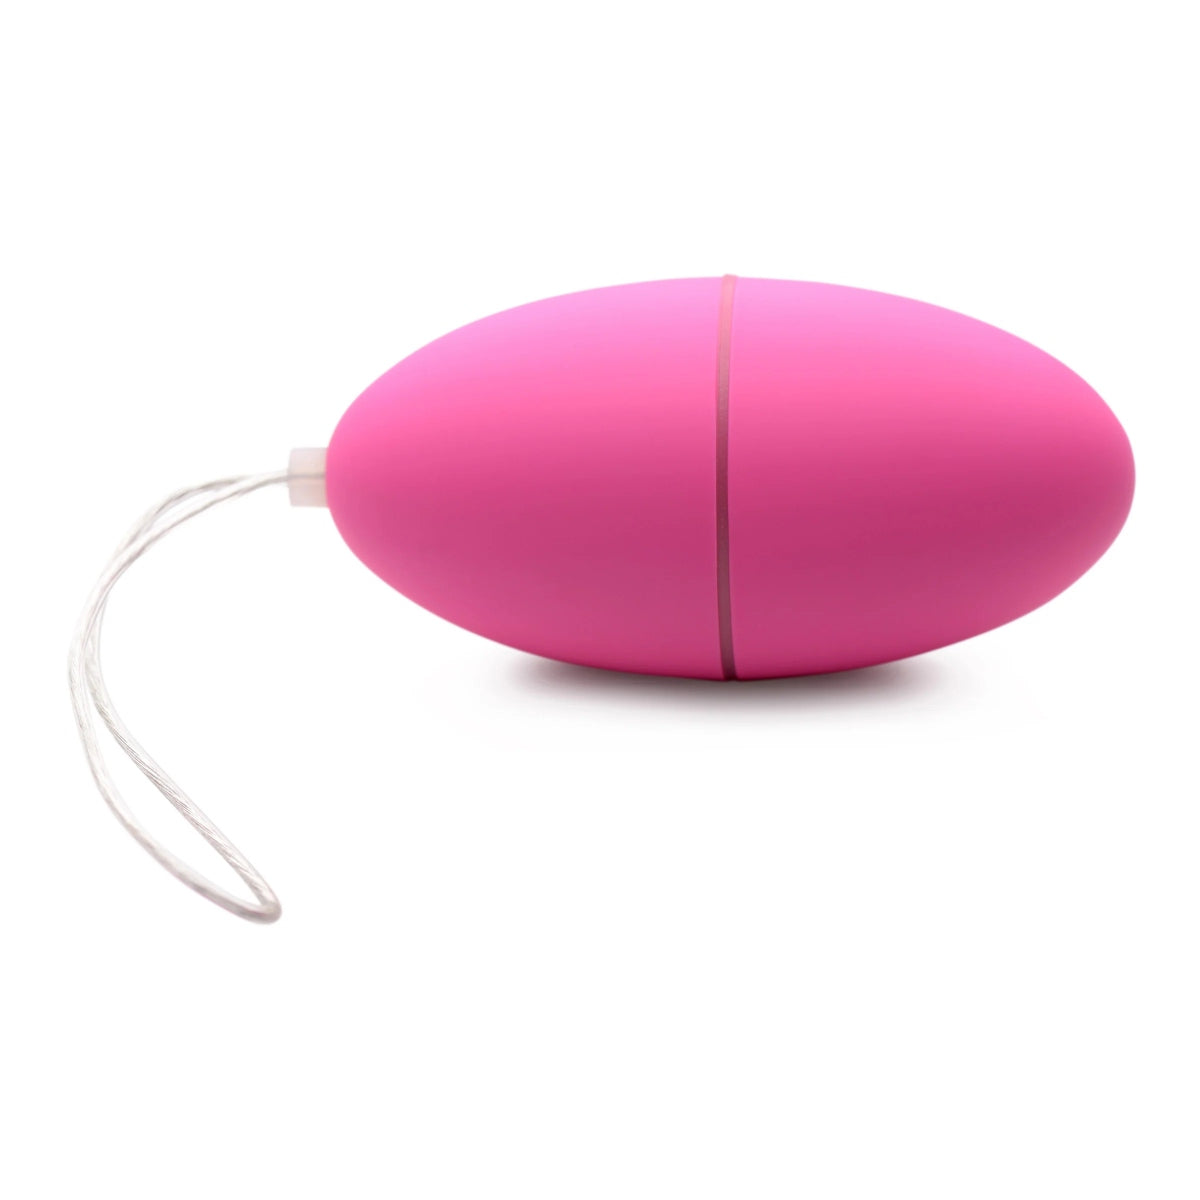 Frisky Scrambler 28X Remote Control Vibrating Egg Pink